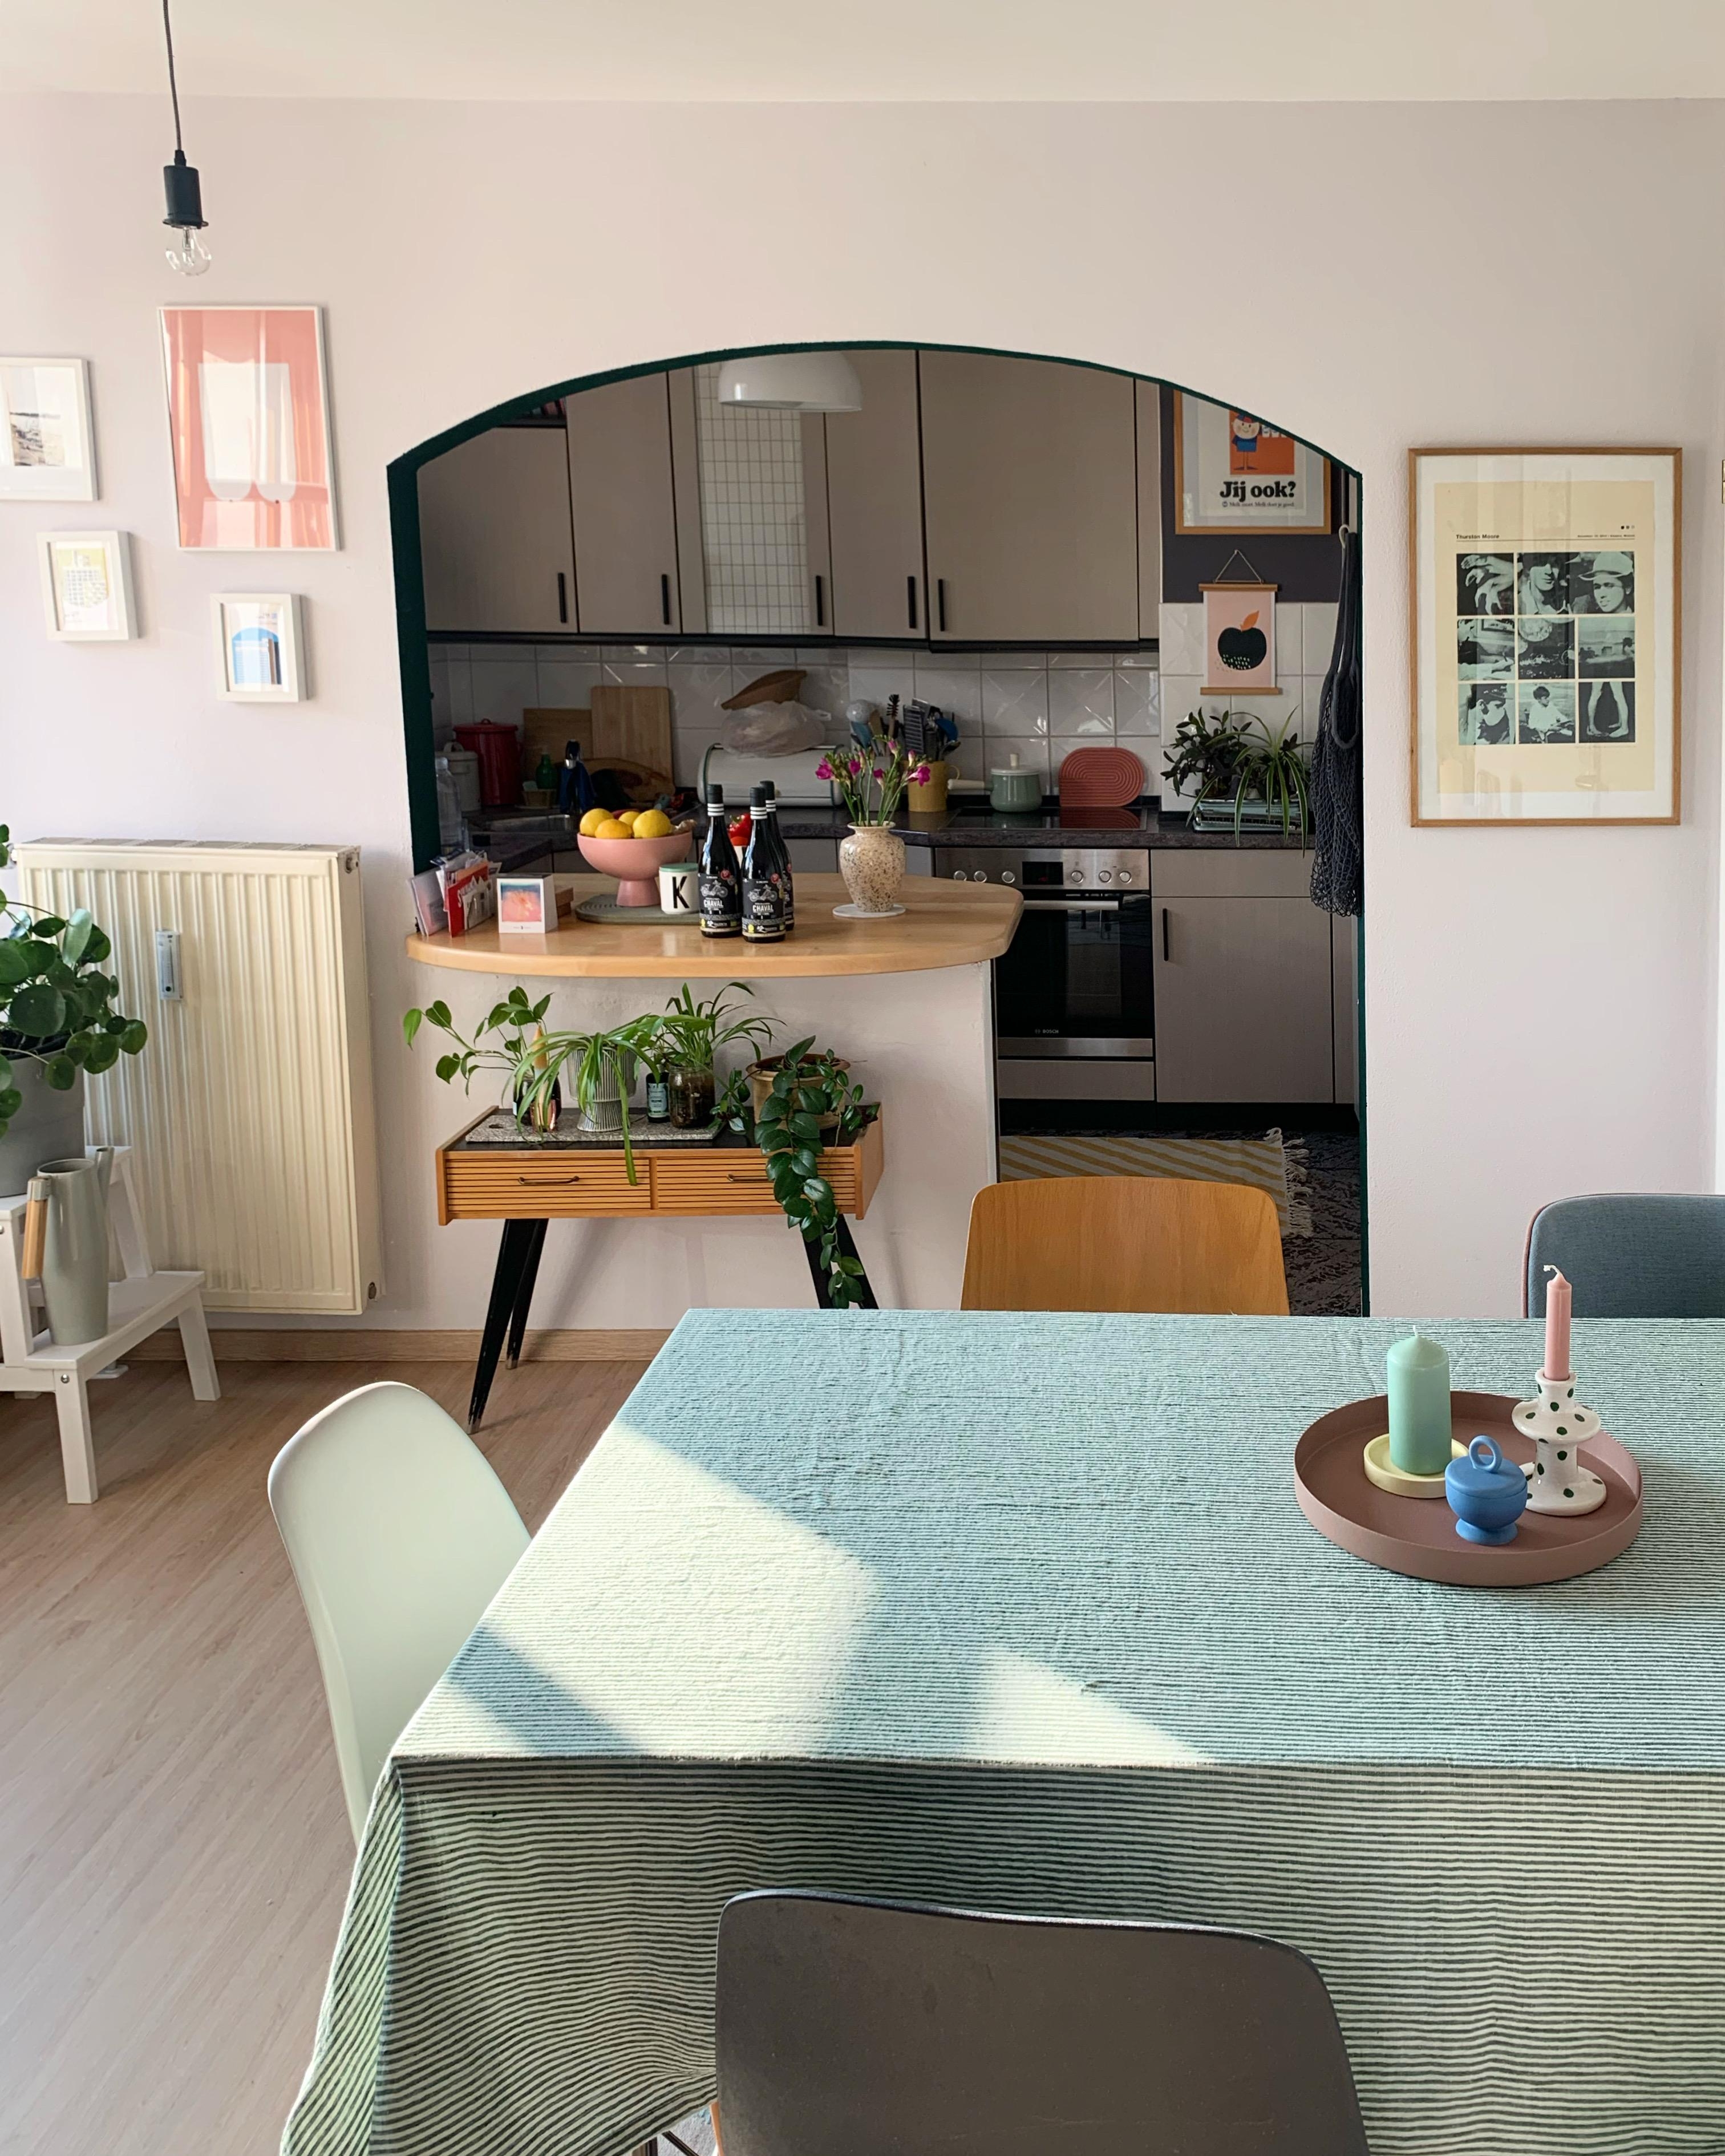 Schon lange nicht mehr hier gewesen! 
#küche #wohnzimmer #bogen #tisch #bunt #frühling #vintage